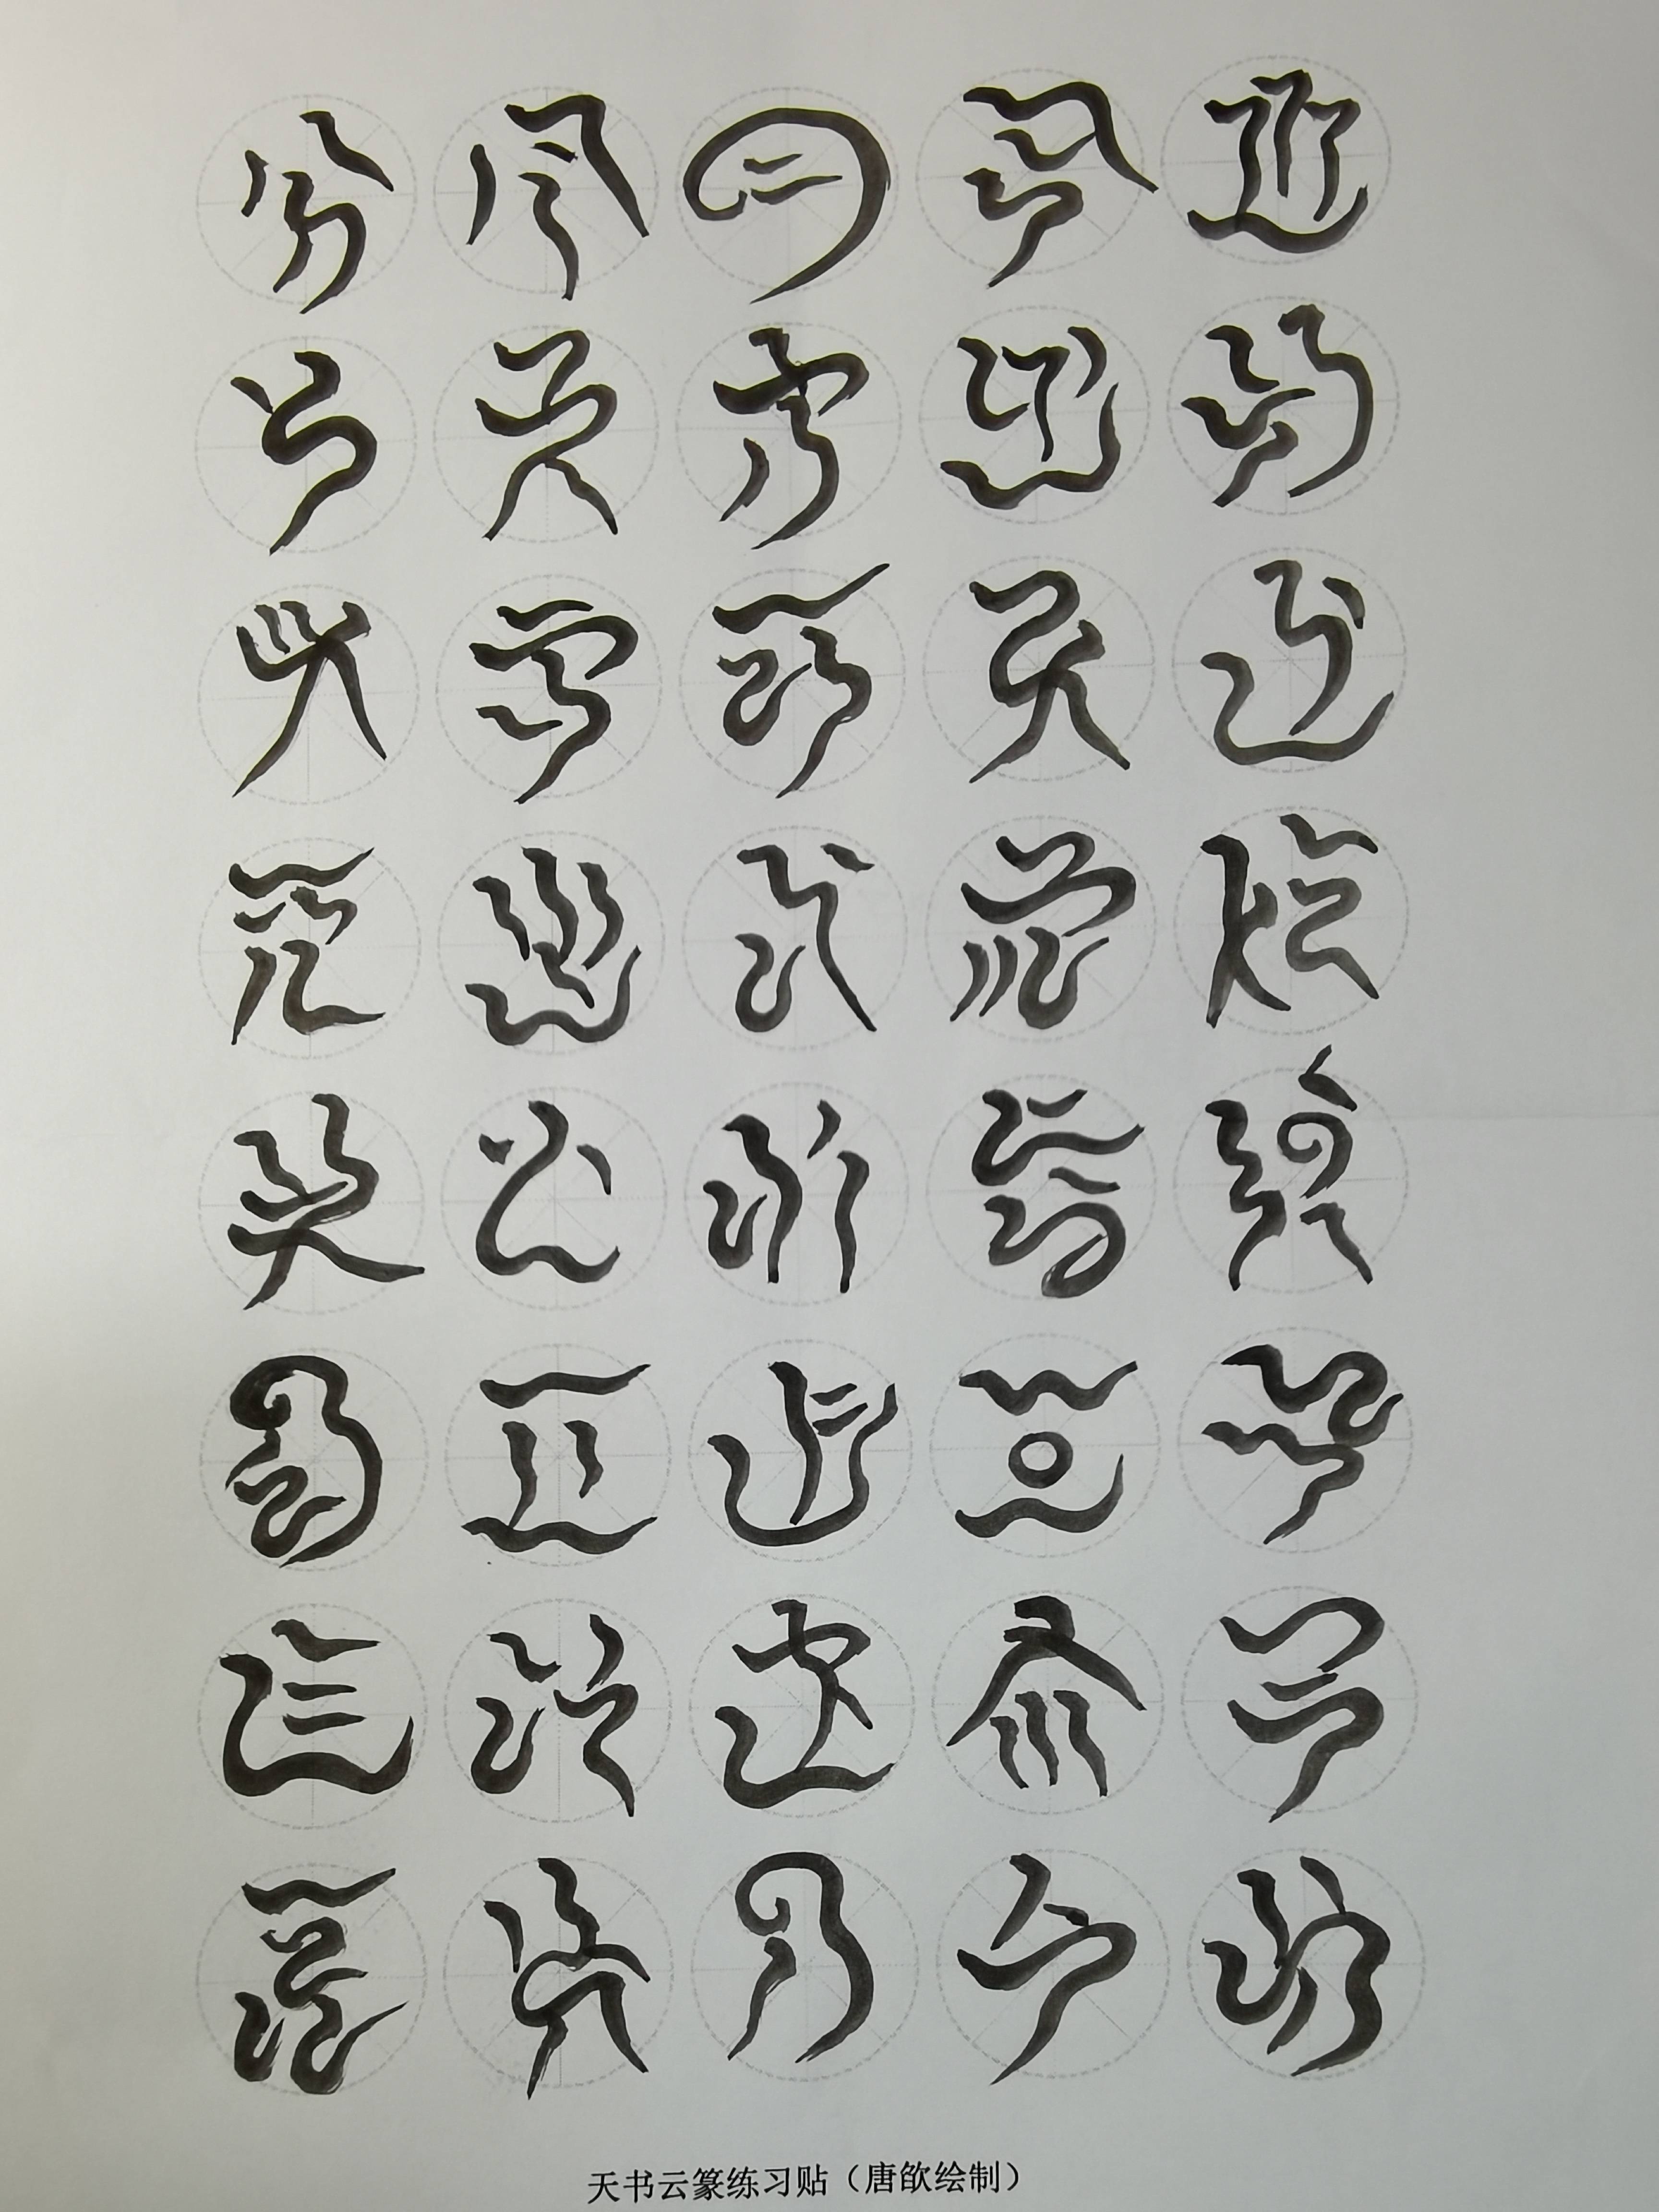 楚国字体古今对照图片